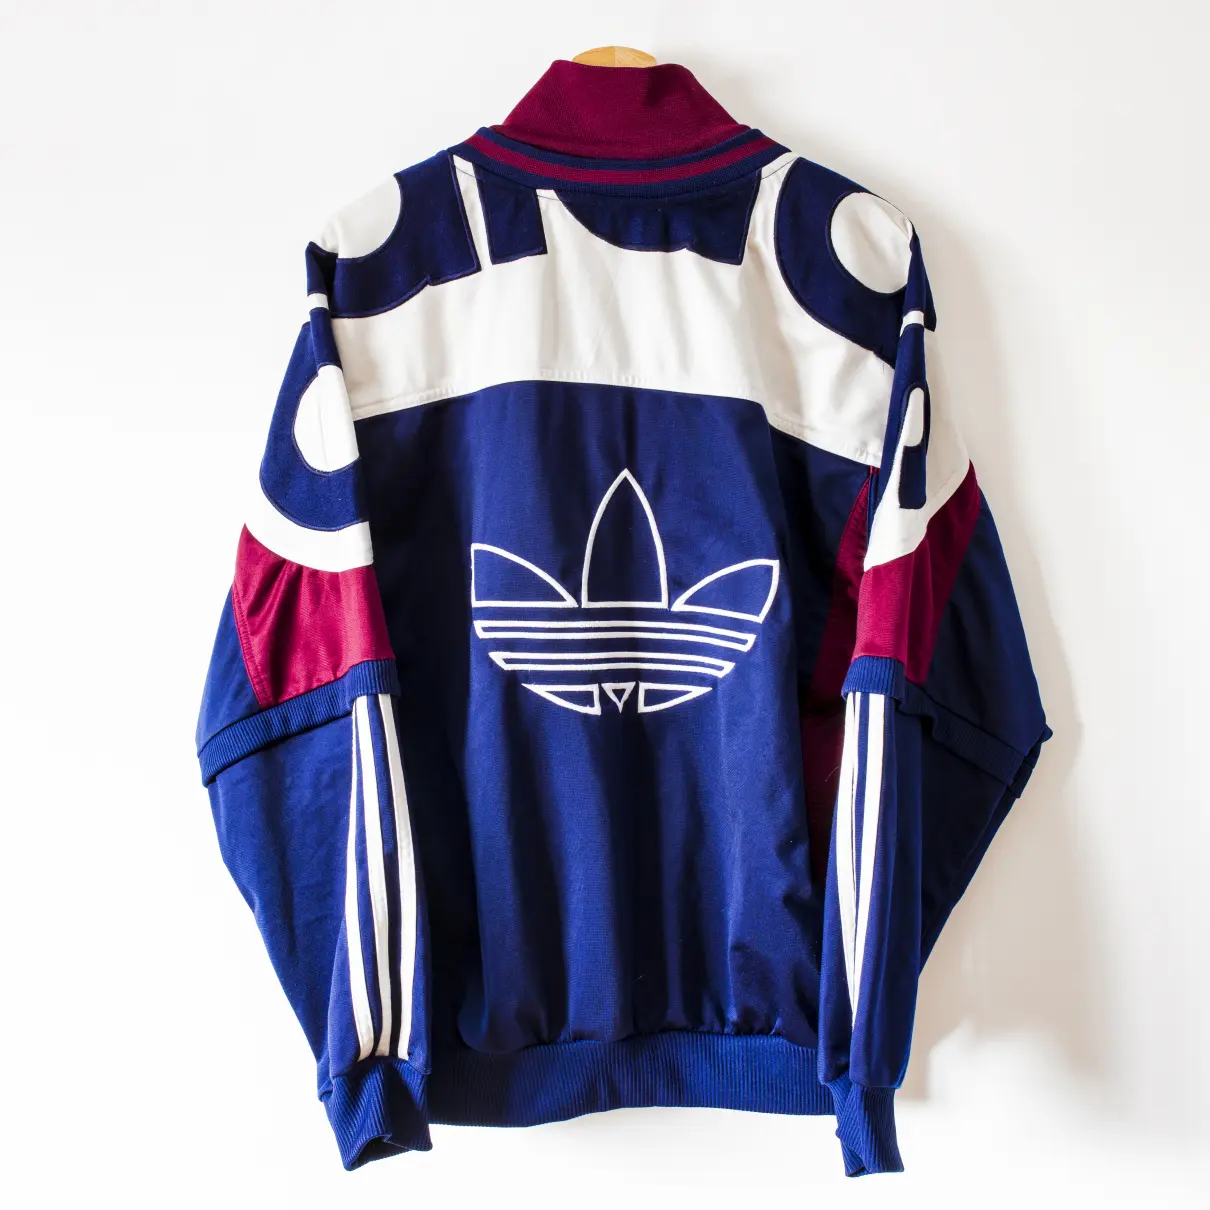 Buy Adidas Jacket online - Vintage